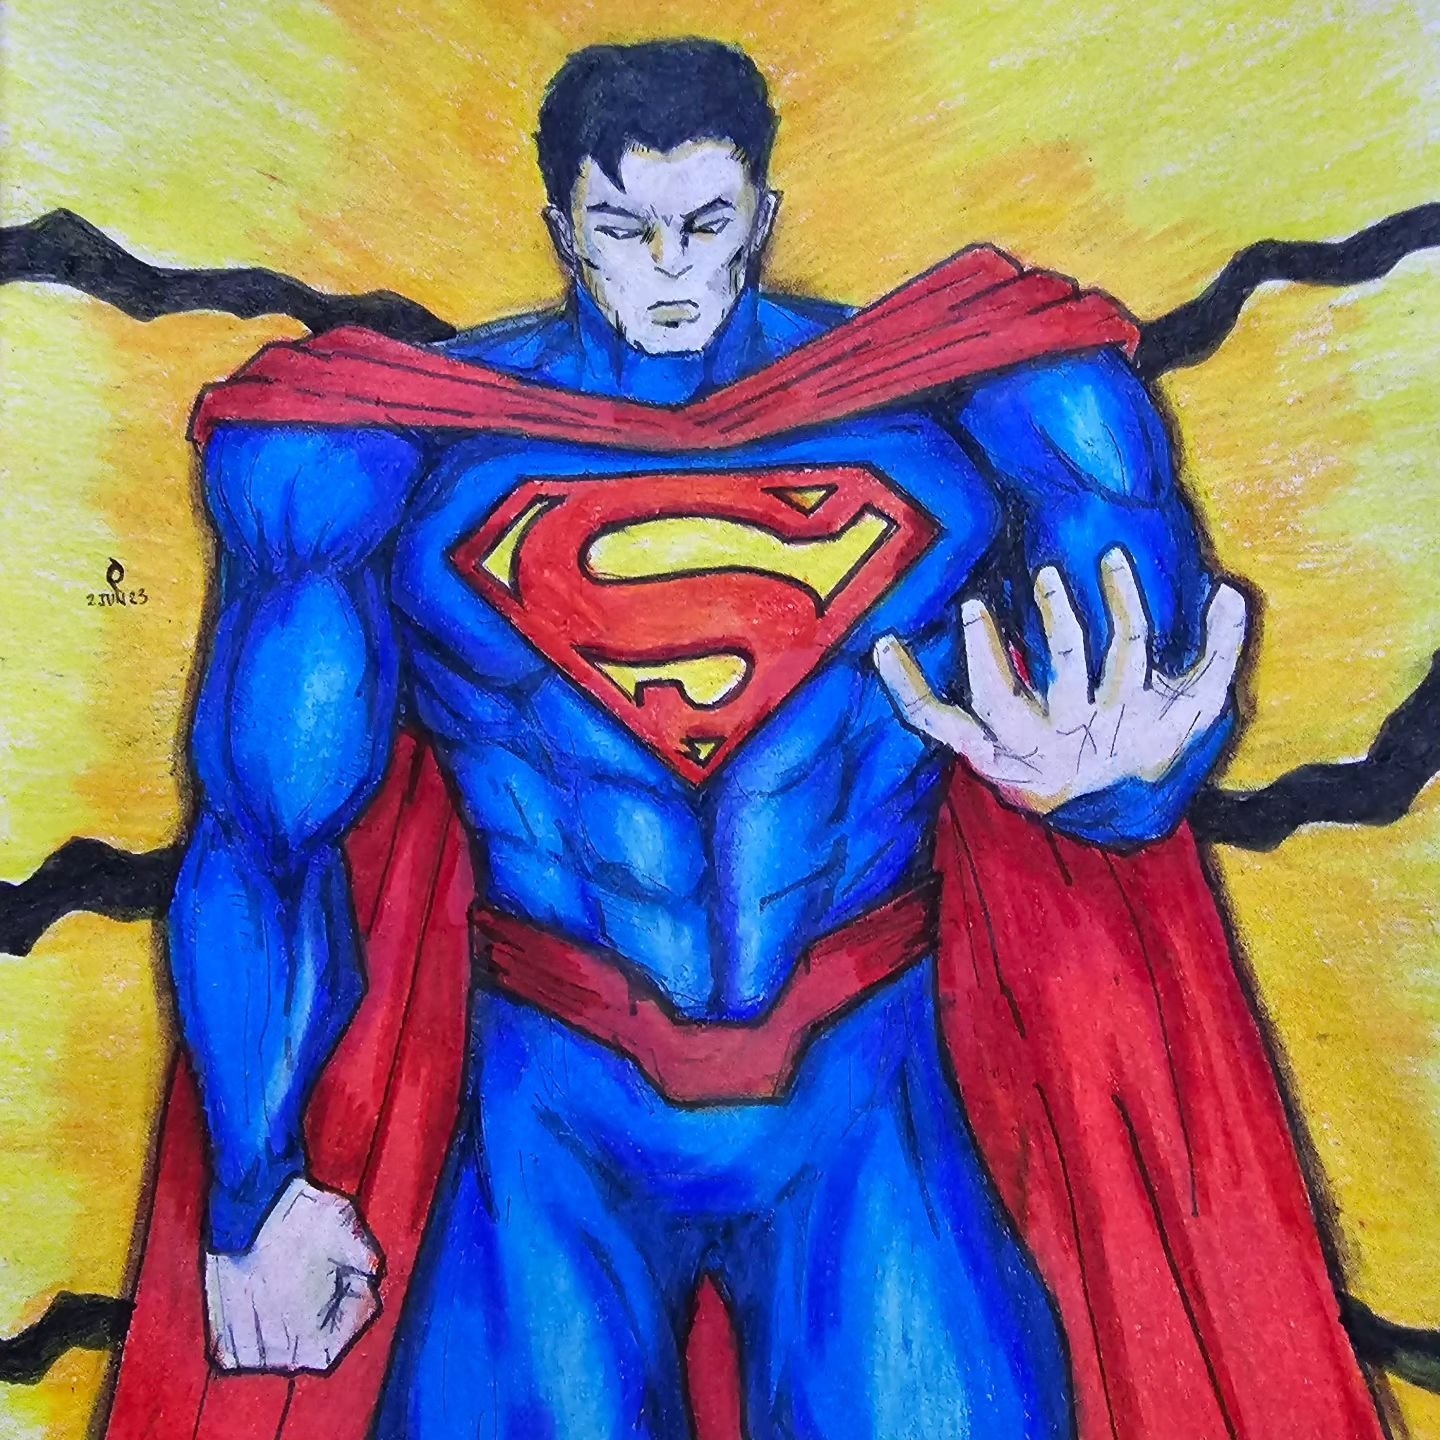 A Superman Fan Art by Poetic Dustbin